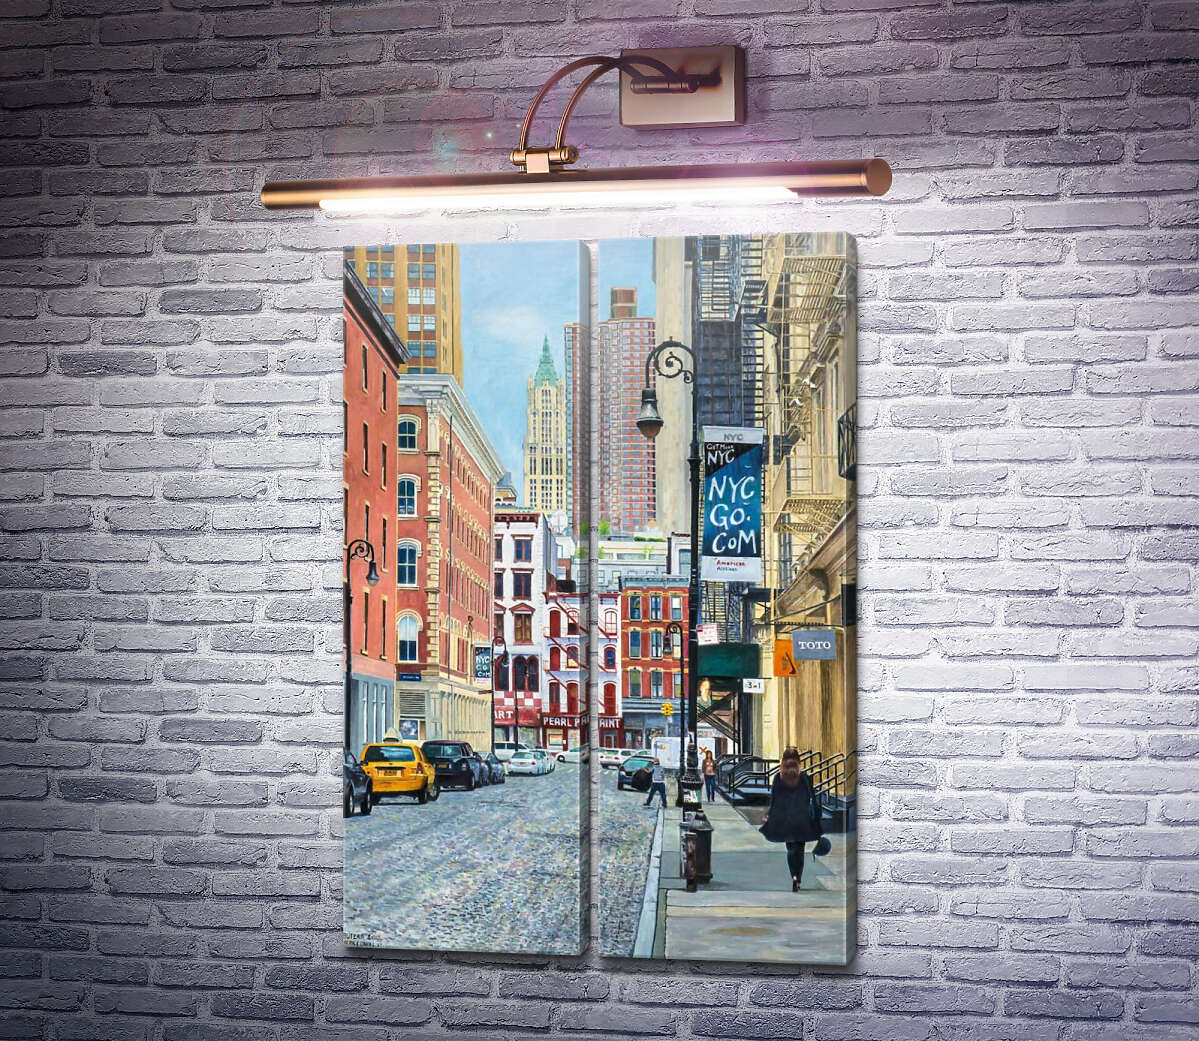 Модульная картина "Перл Пейнт" на Канал-Стрит, Нью-Йорк Энтони Бутера